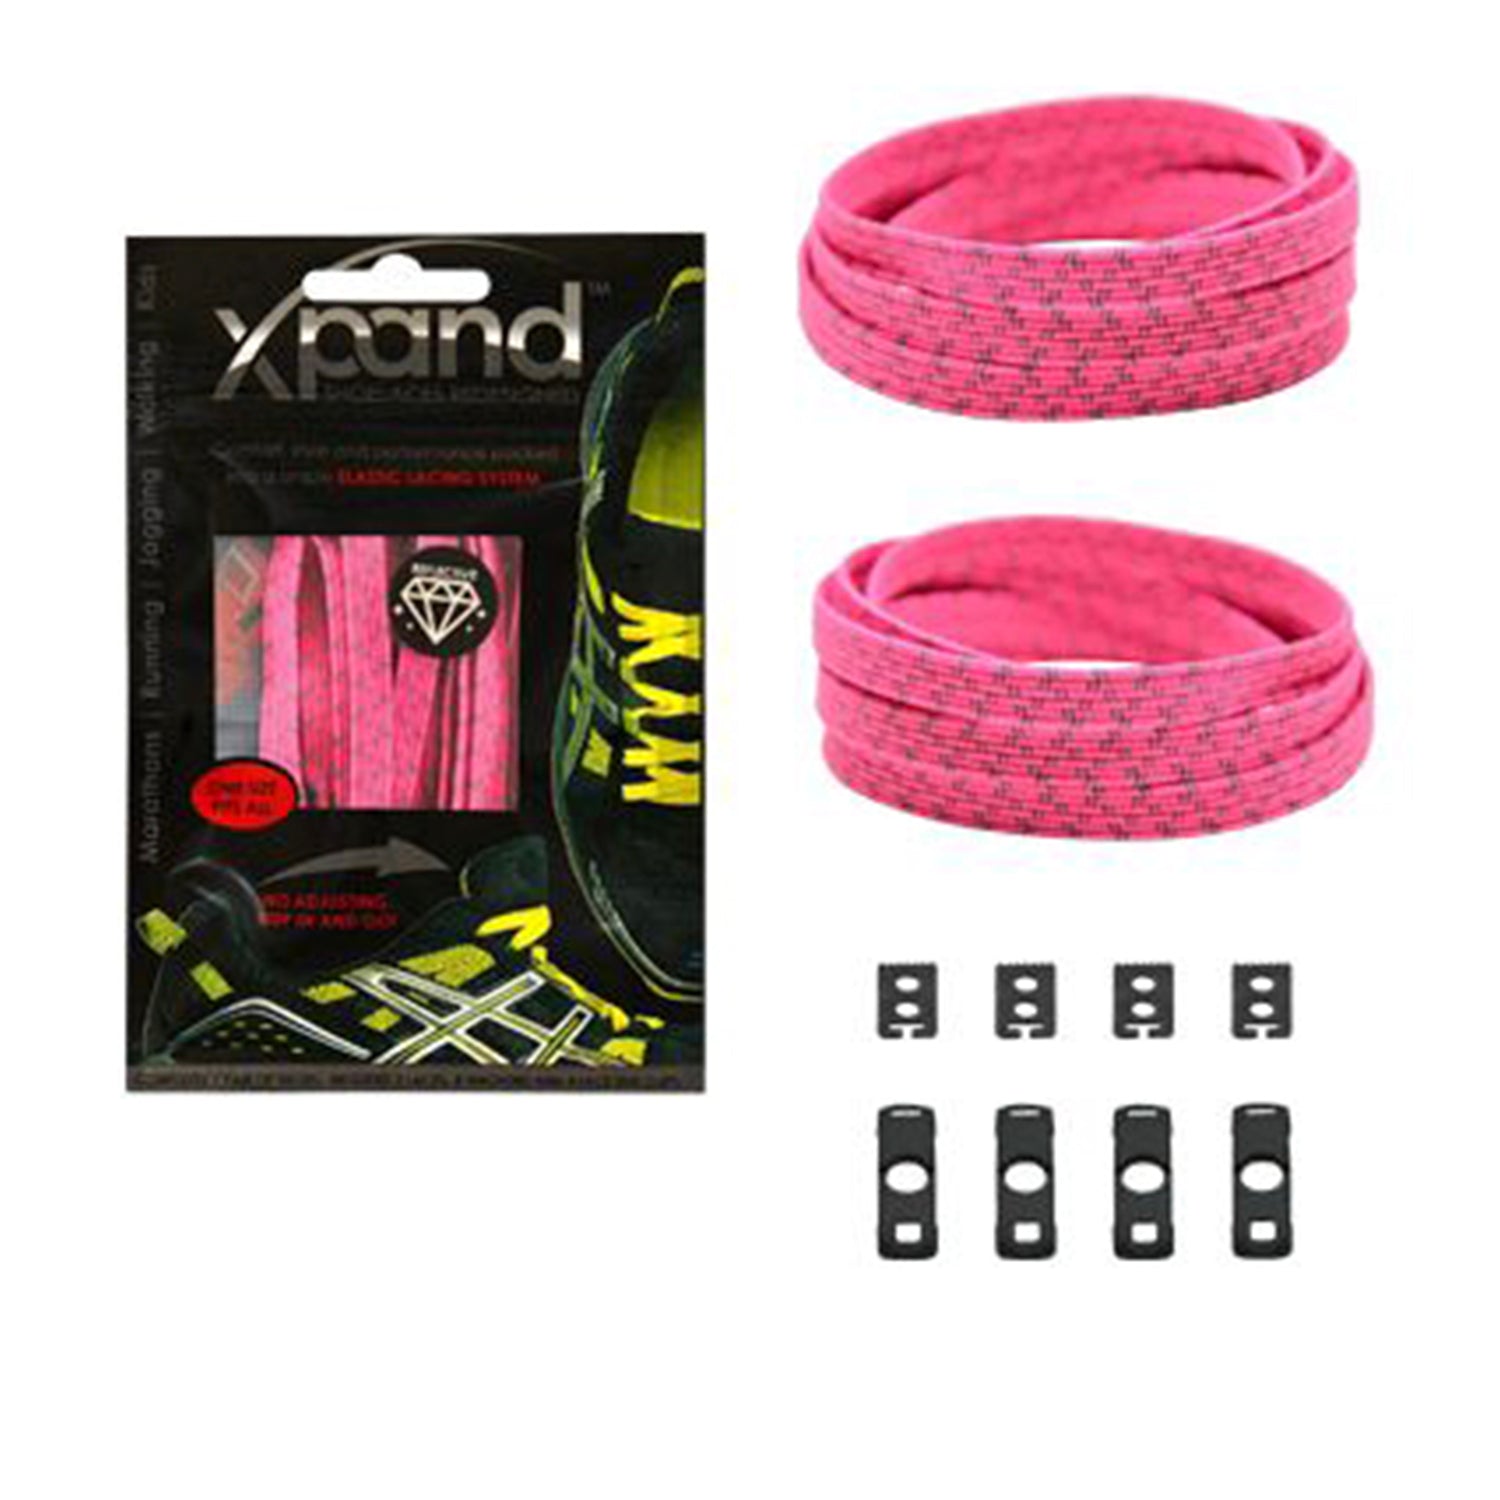 XPand Original No-Tie Shoe Laces (Neon Pink Reflective)